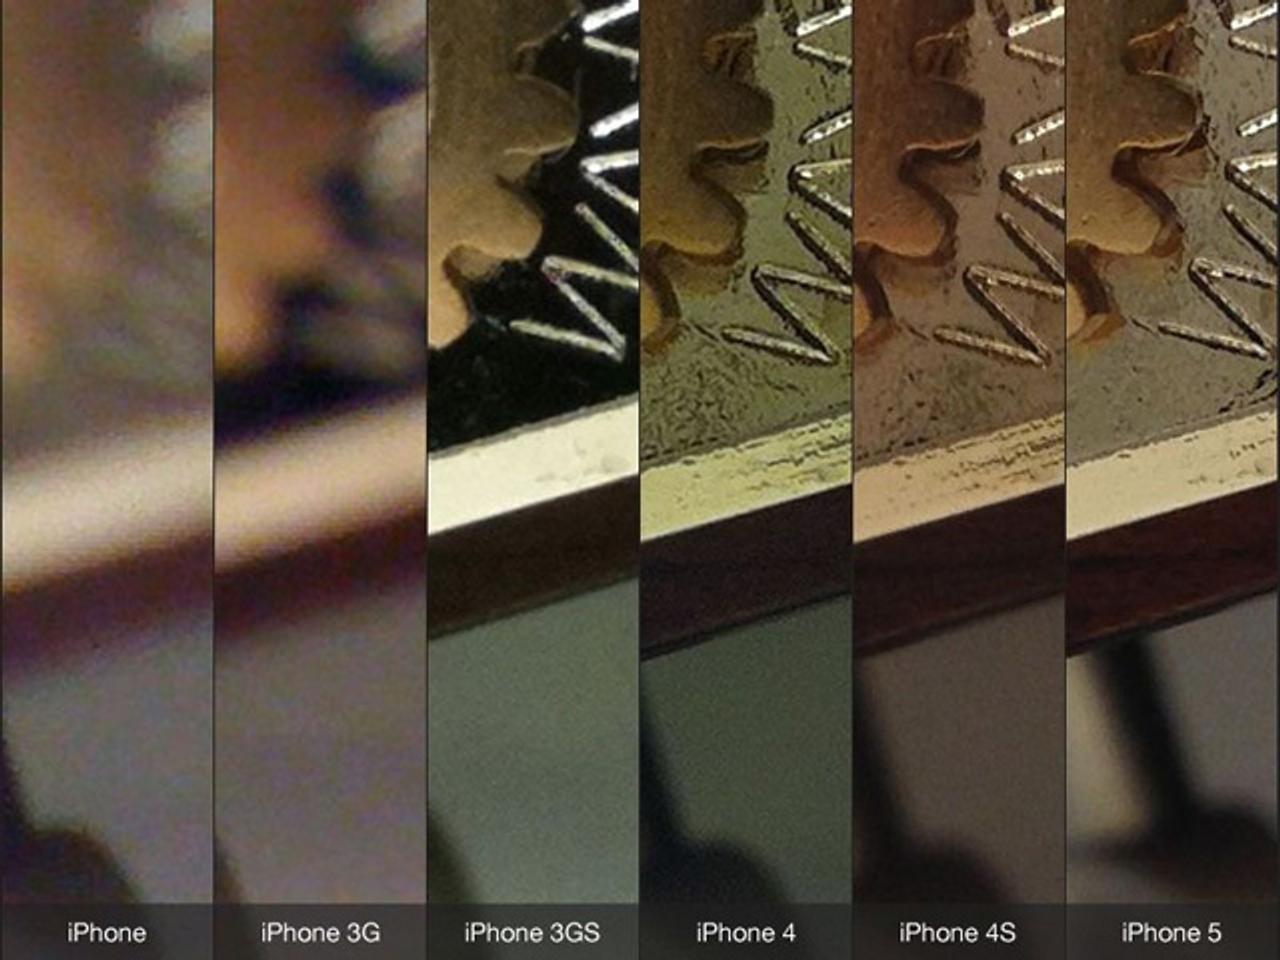 すごい進化だ......！ 歴代iPhoneのカメラ性能を比較した写真サンプル